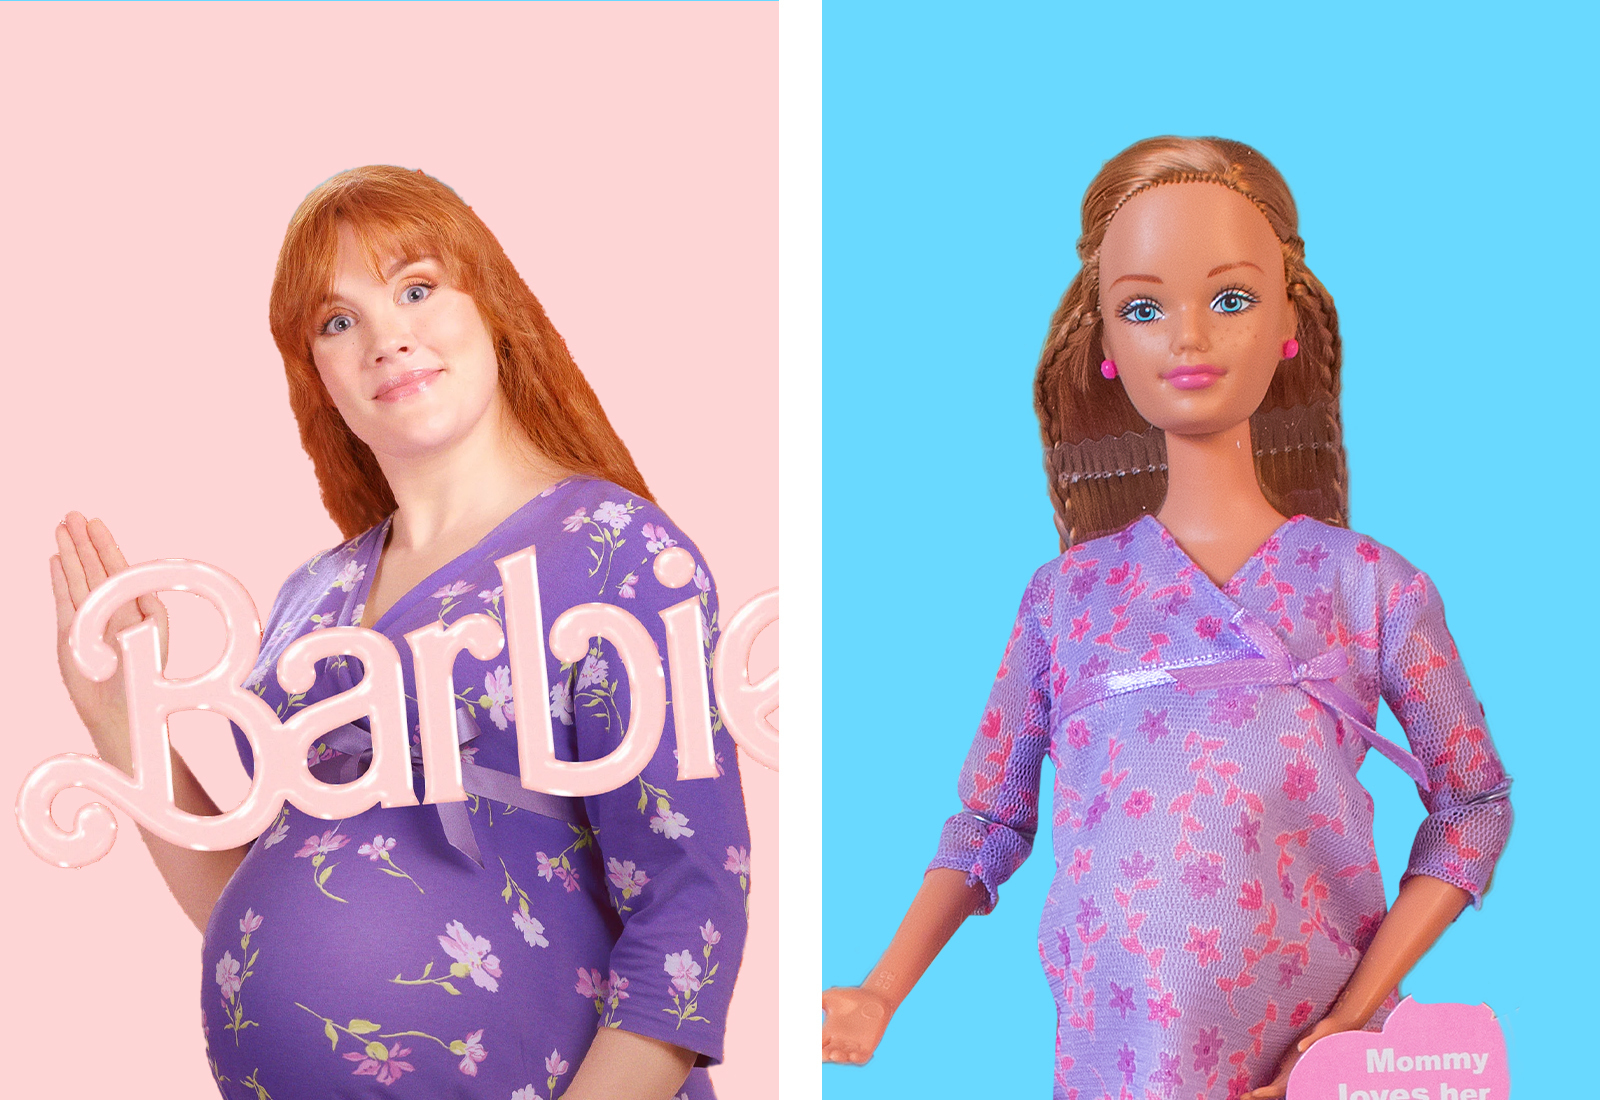 Midge, Barbie Wiki